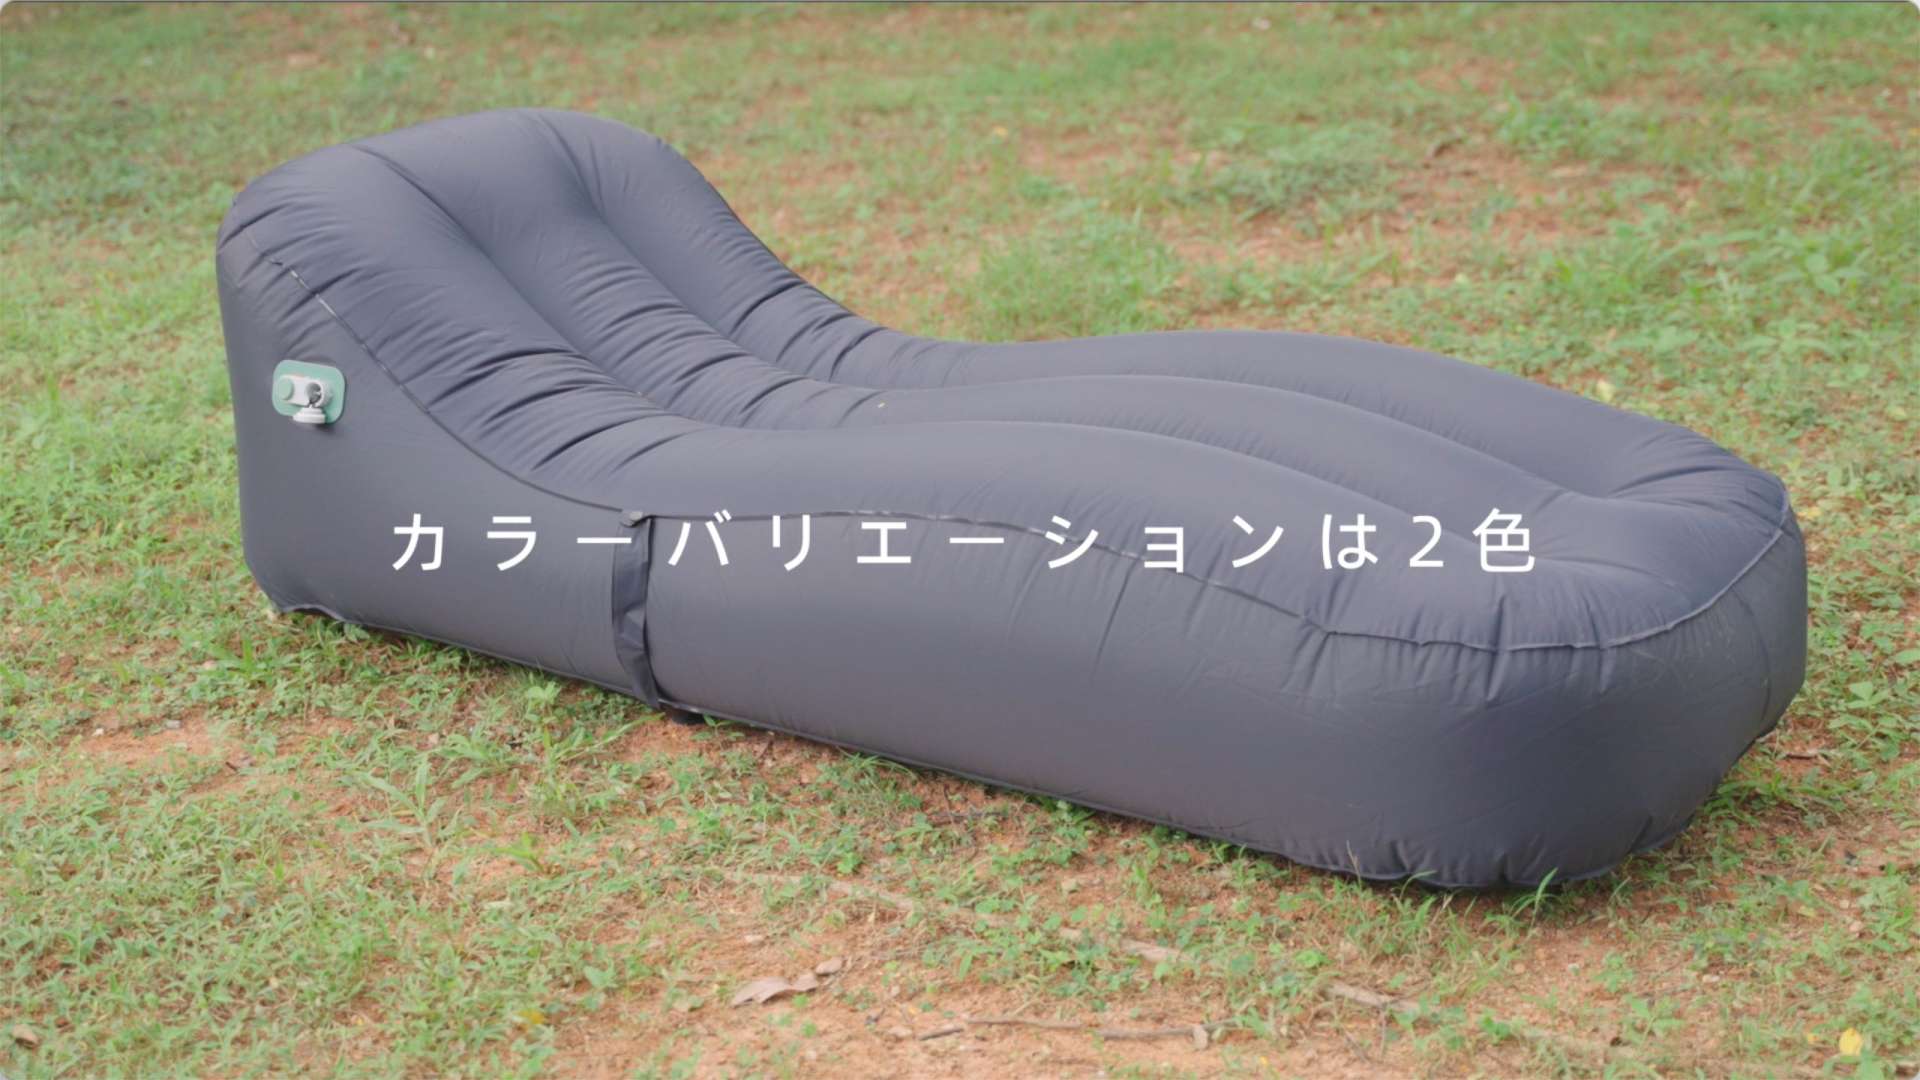 反射镜面 一键自动充气床 日本亚马逊 电商广告